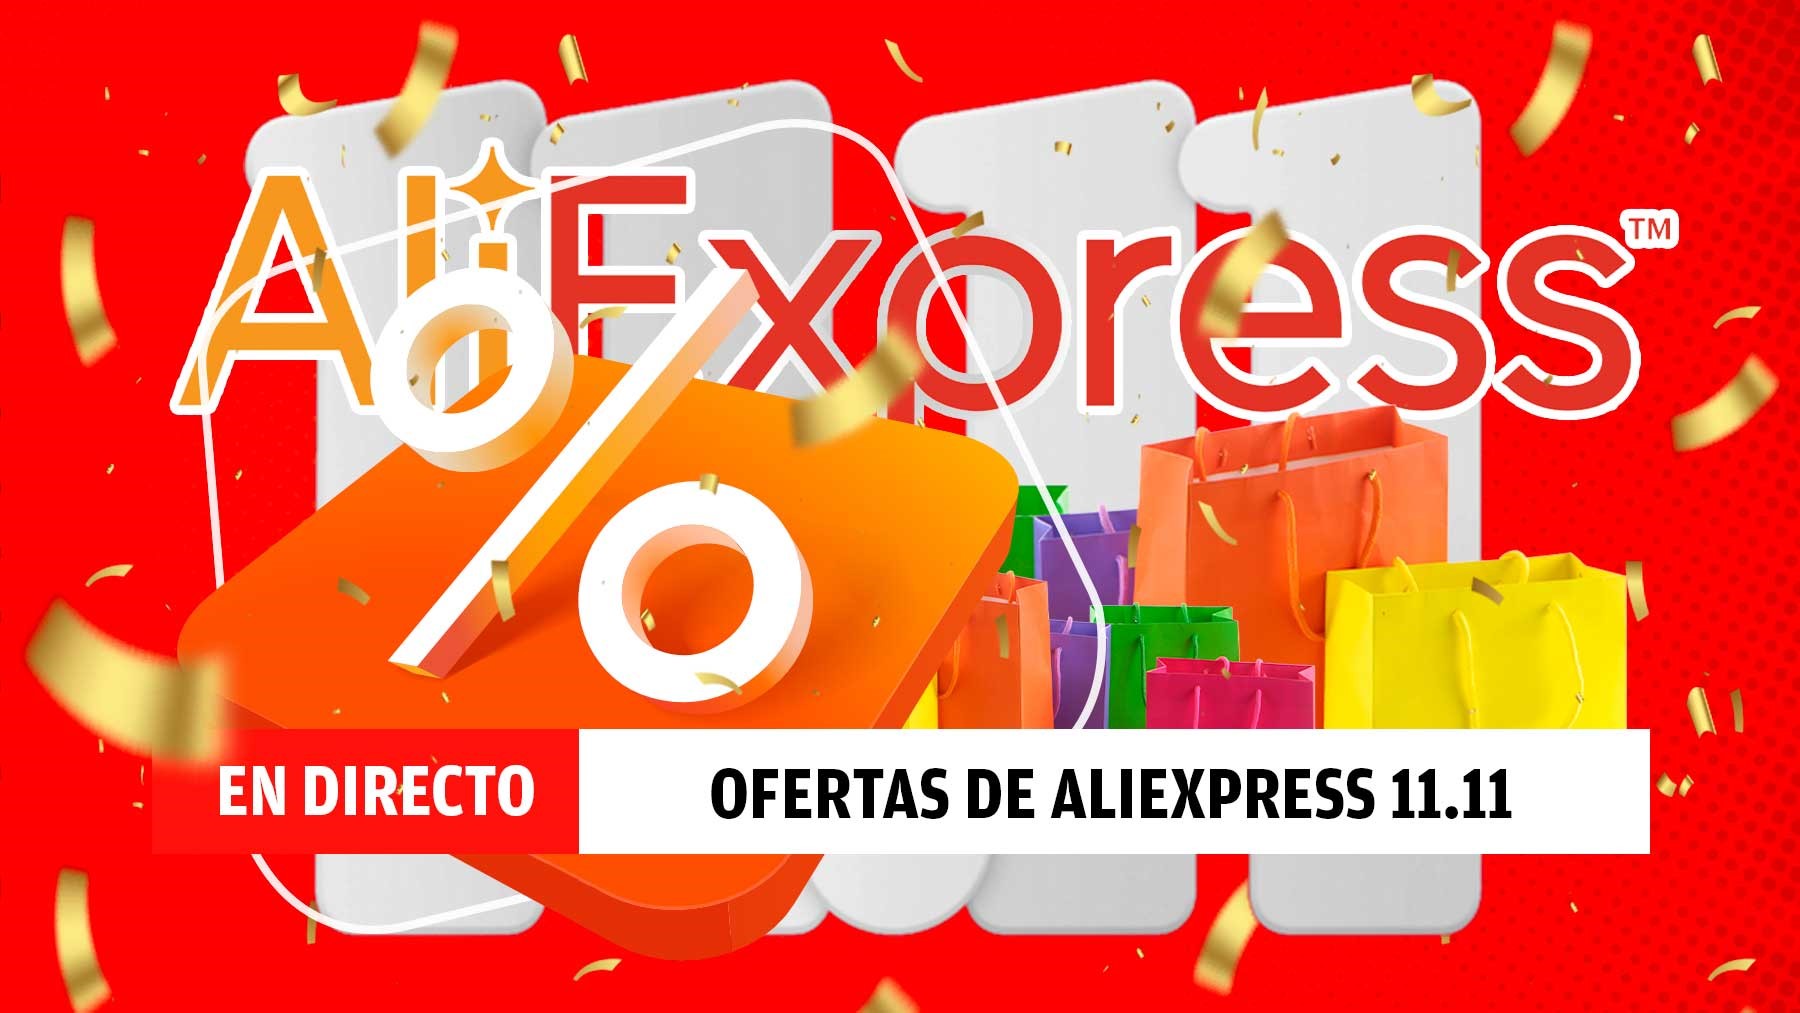 Las mejores ofertas de AliExpress del 11.11, en directo